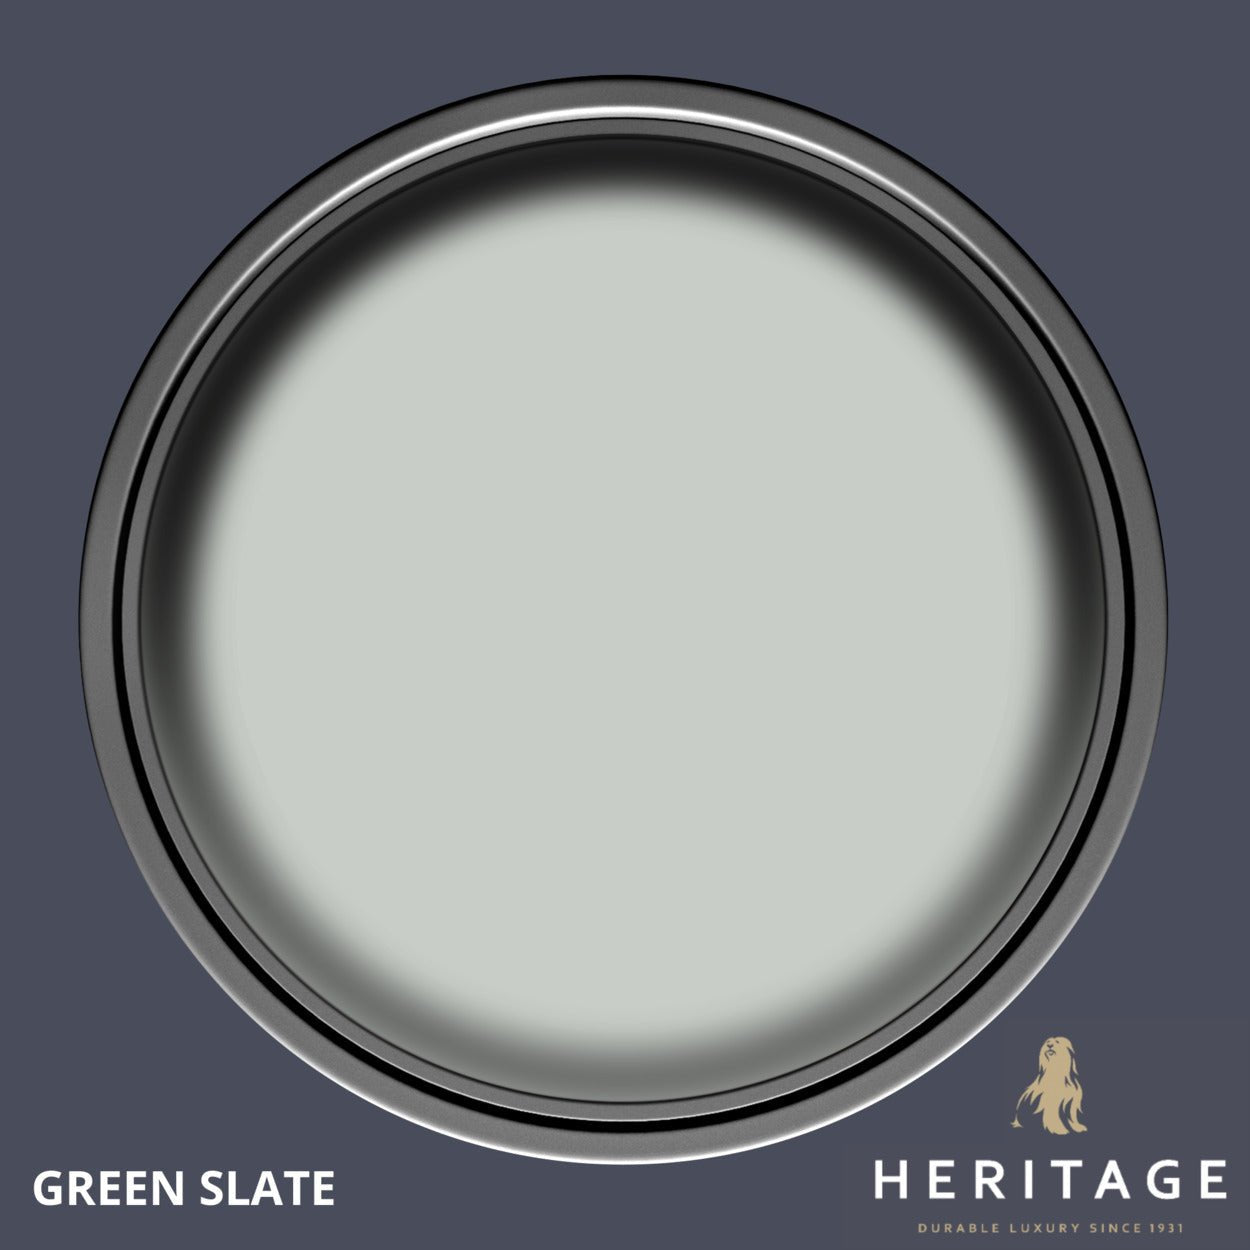 Dulux Heritage Velvet Matt Finish Paint Tester Pot 125ml Green Marl